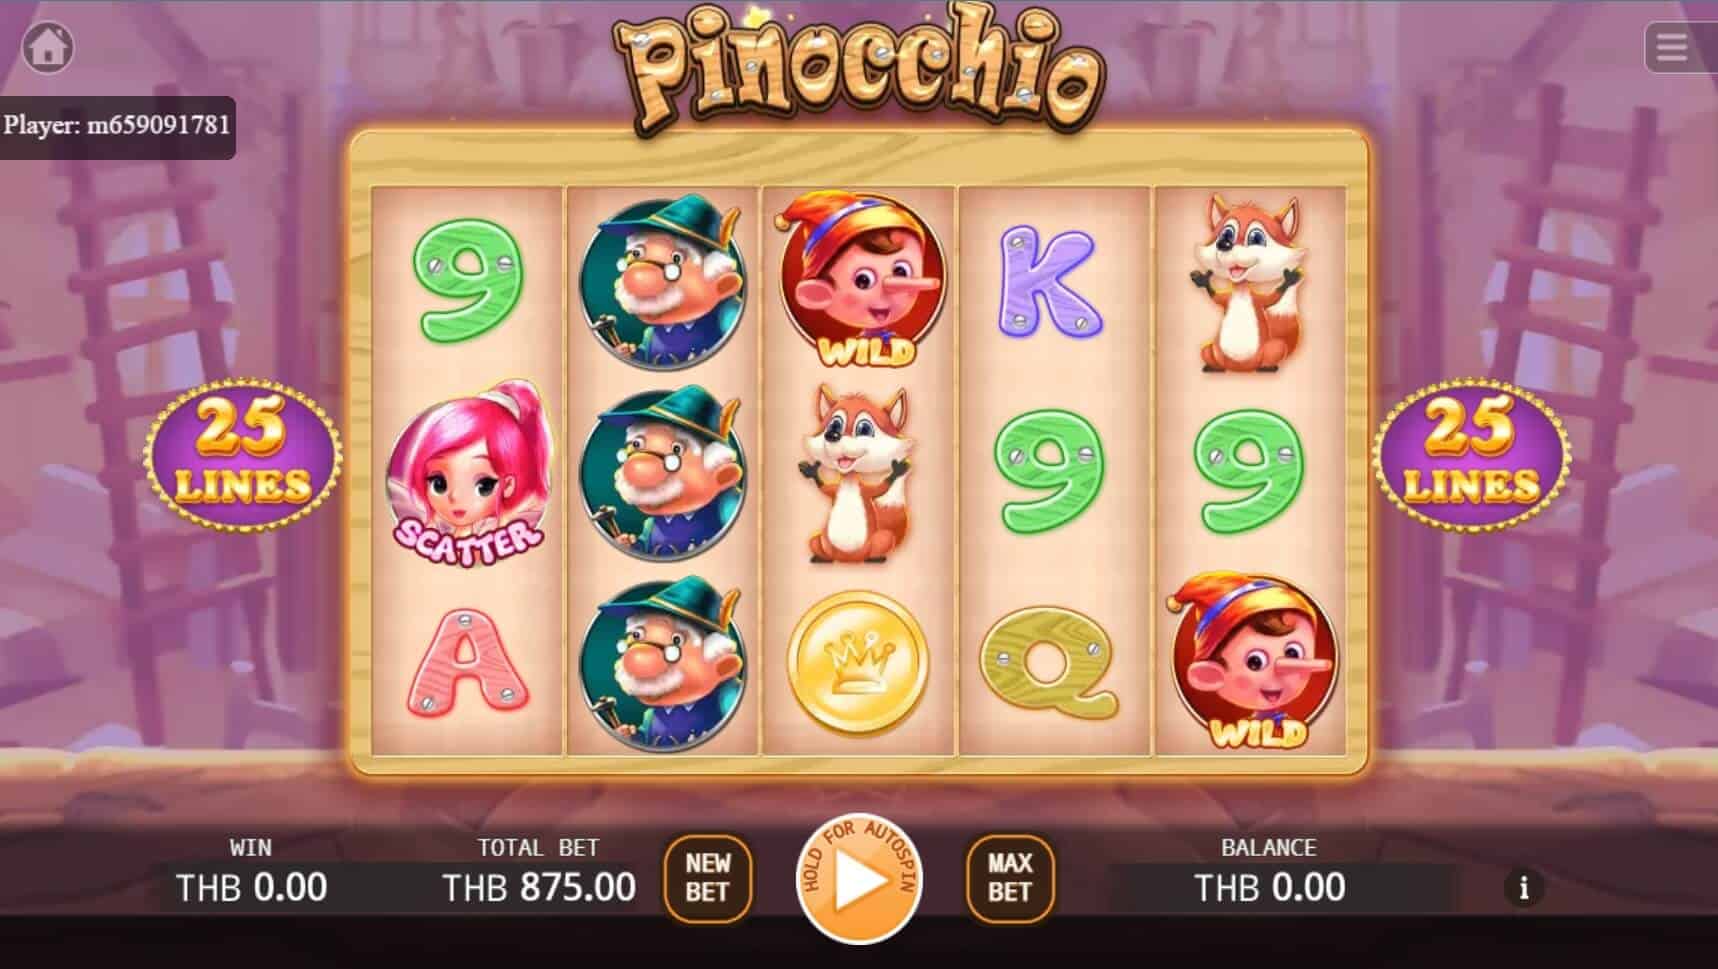 Pinocchio สล็อต เว็บตรง ไม่ผ่านเอเย่นต์ ค่าย KA Gaming โจ๊กเกอร์ 888